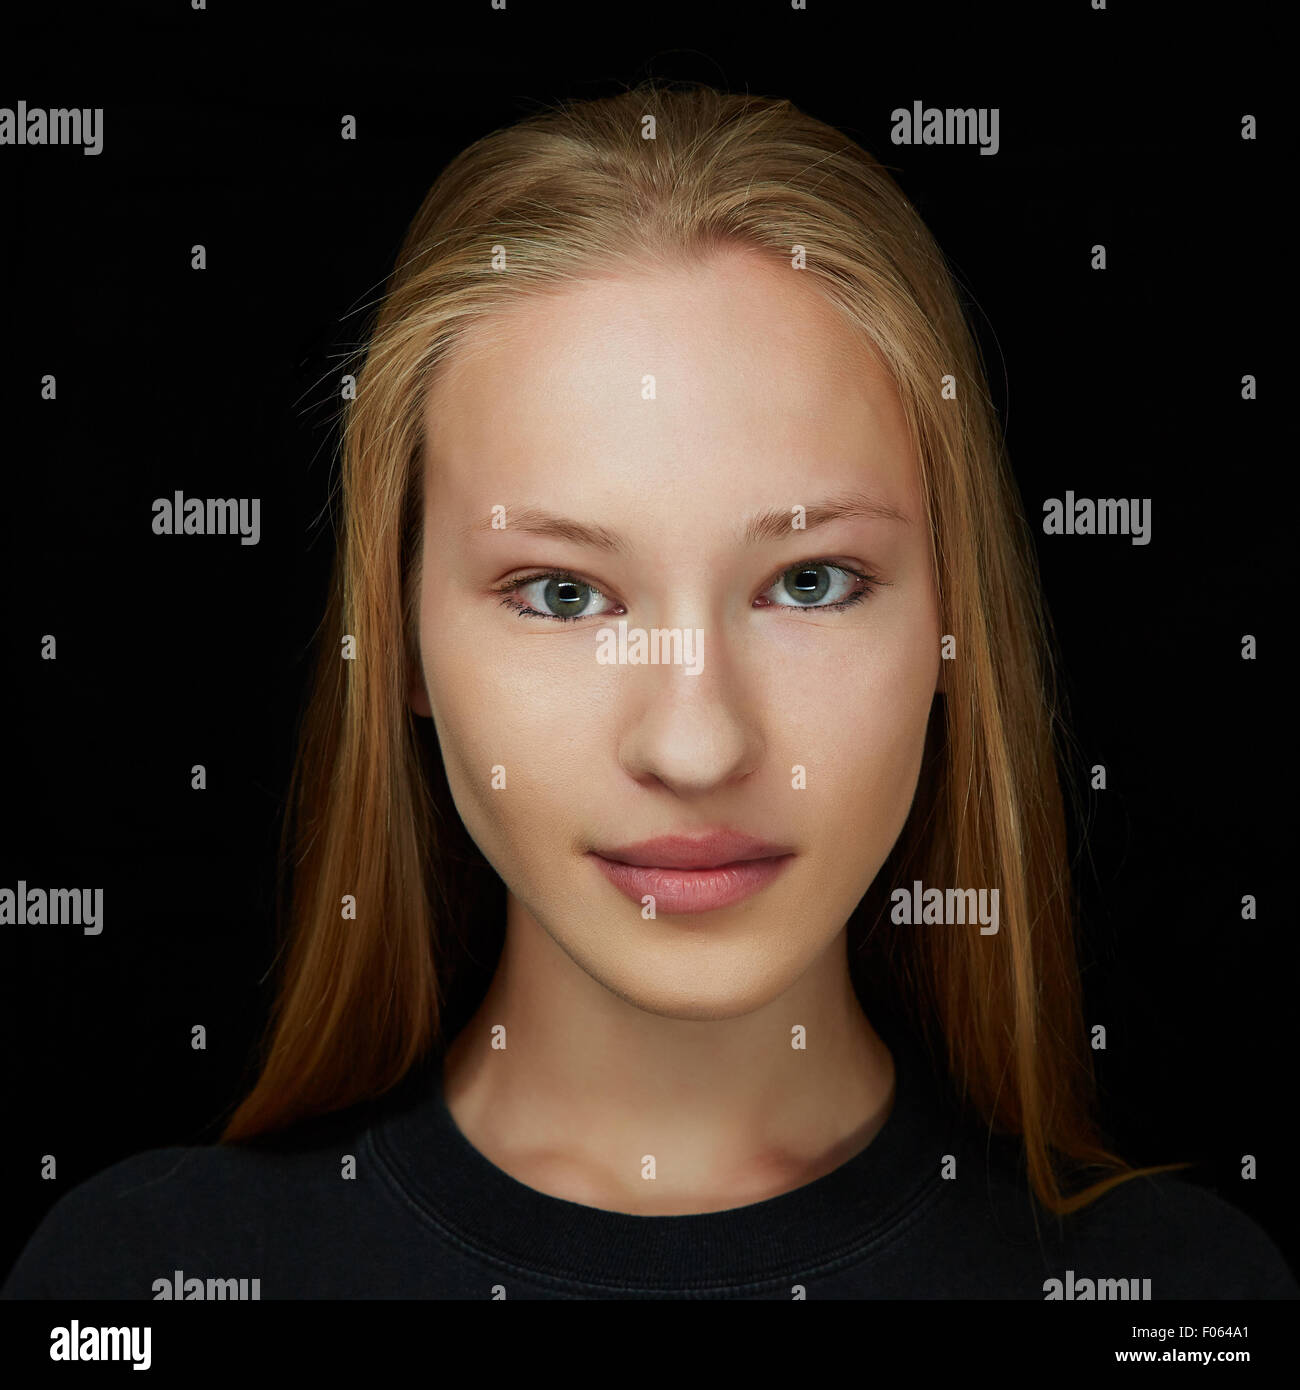 Gesicht einer jungen attraktiven blonden Frau in Vorderansicht auf dunklem Hintergrund Stockfoto